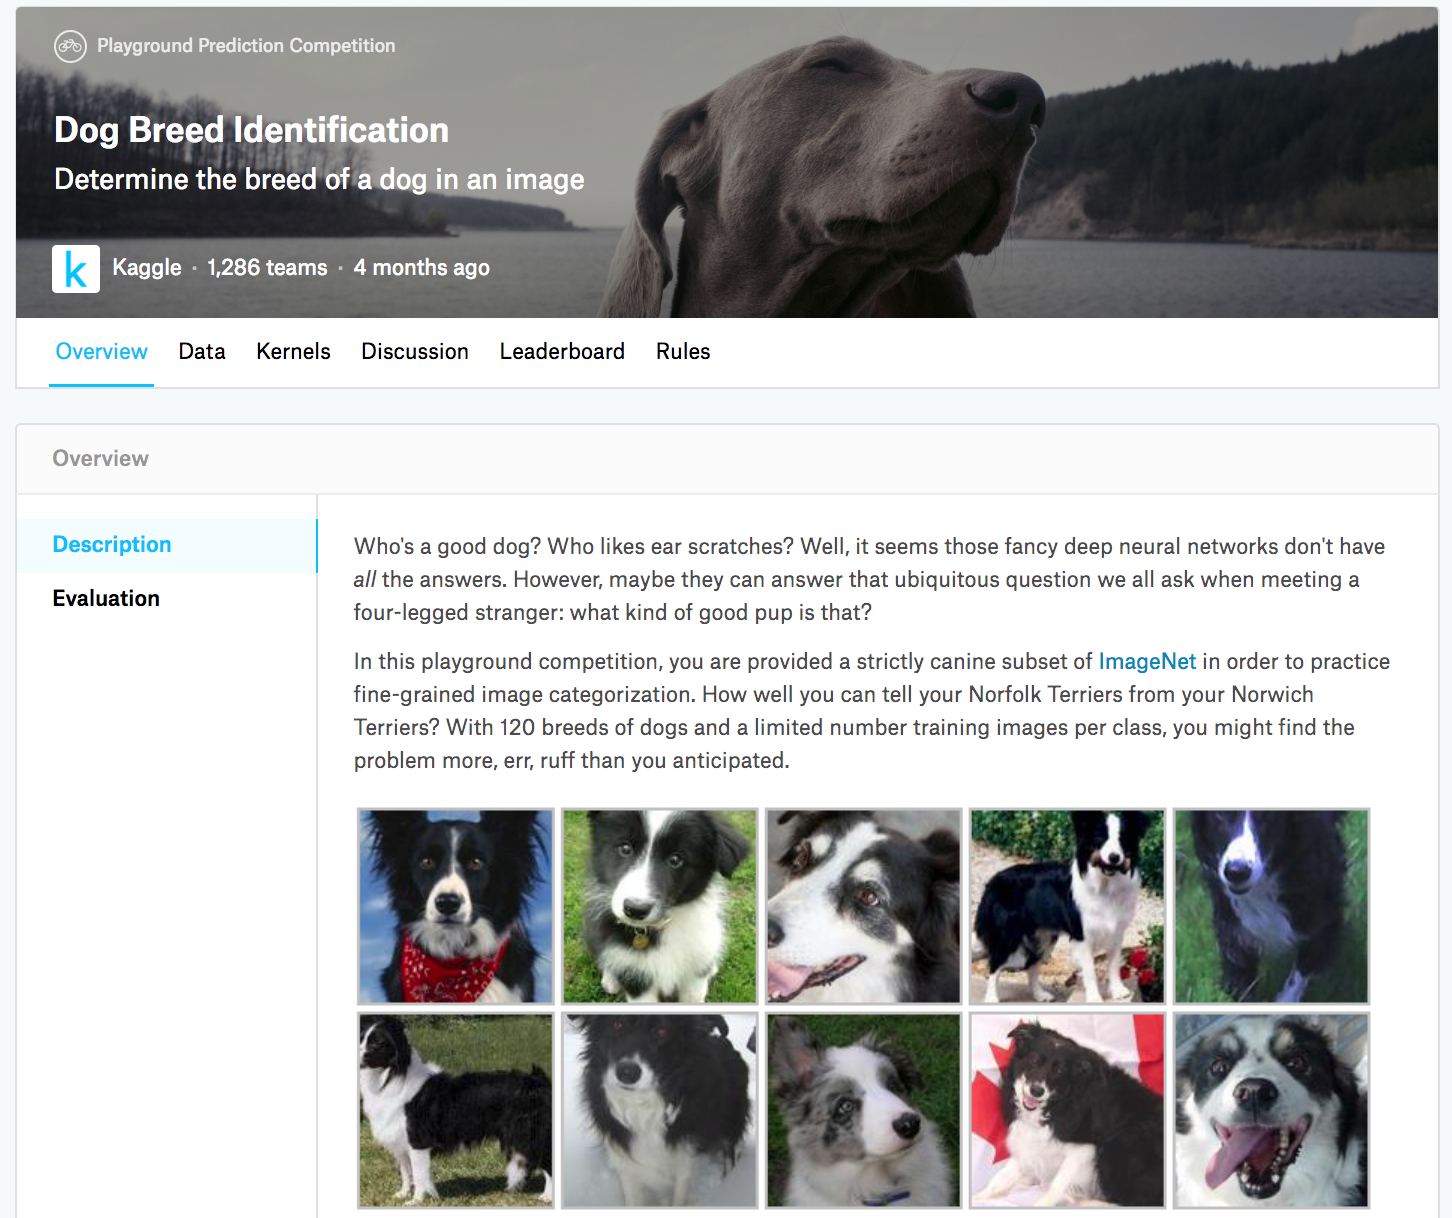 狗的品种识别比赛的网页信息。比赛数据集可通过点击“Data”标签获取